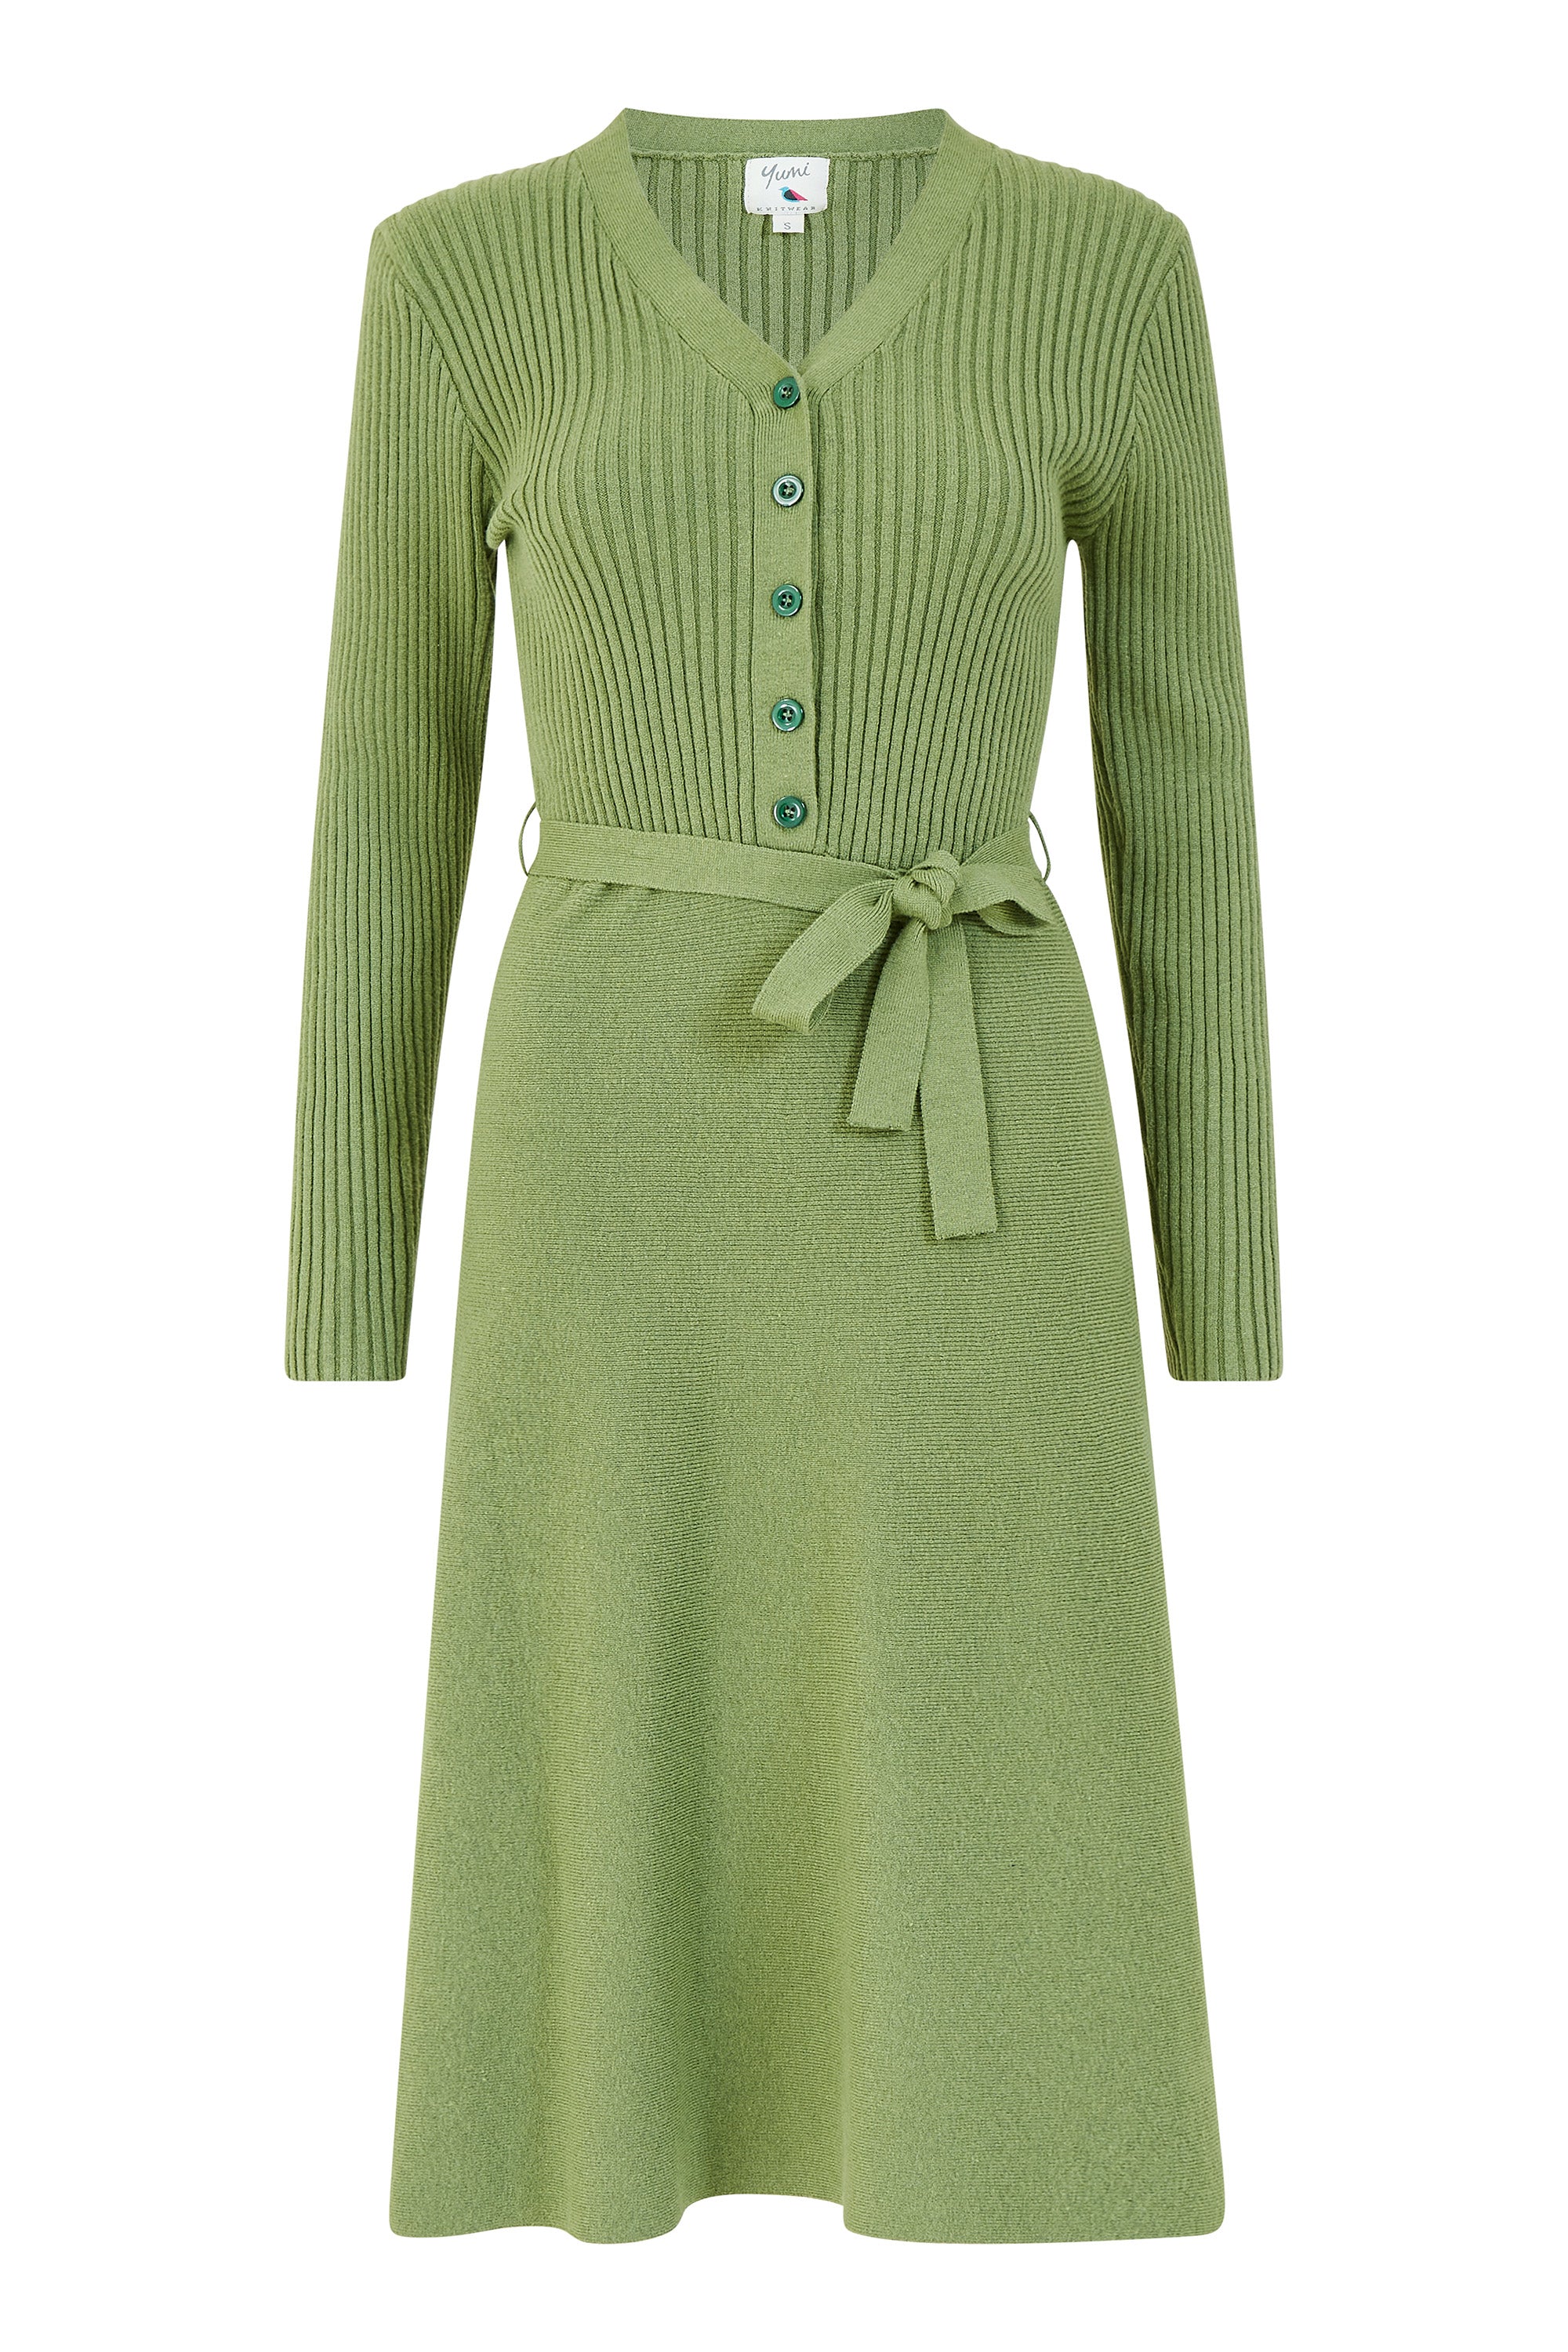 Πλεκτό πράσινο φόρεμα σε γραμμή άλφα της Yumi